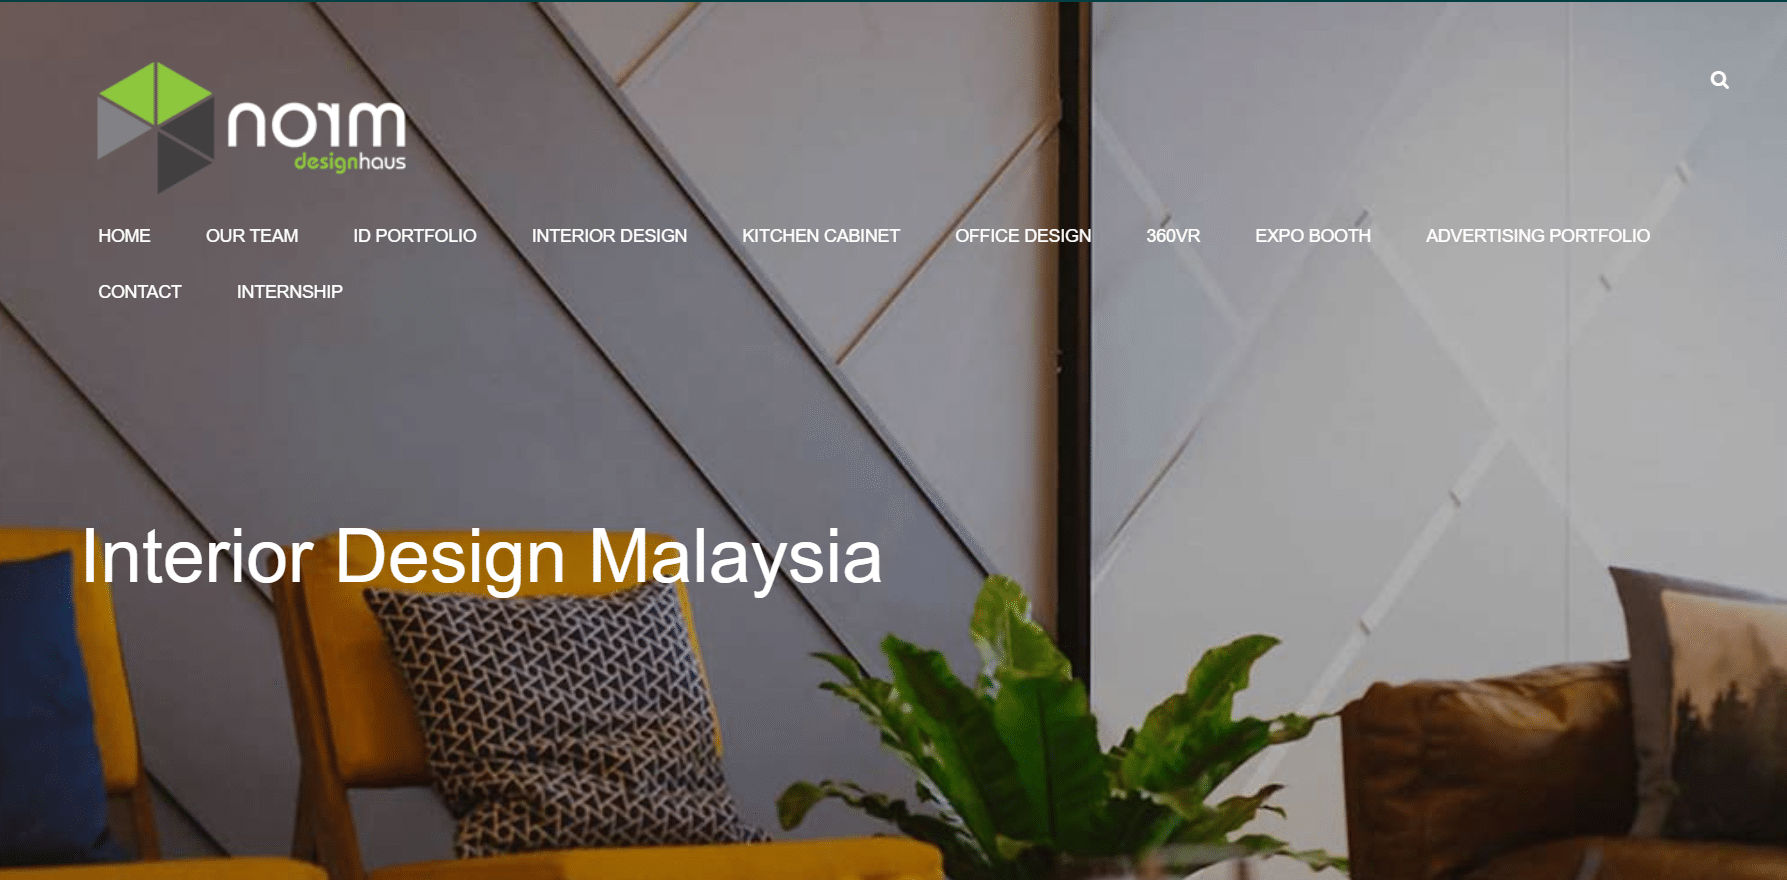 Norm Designhaus professional interior design company in Kuala Lumpur, review interior designing, space reimaging